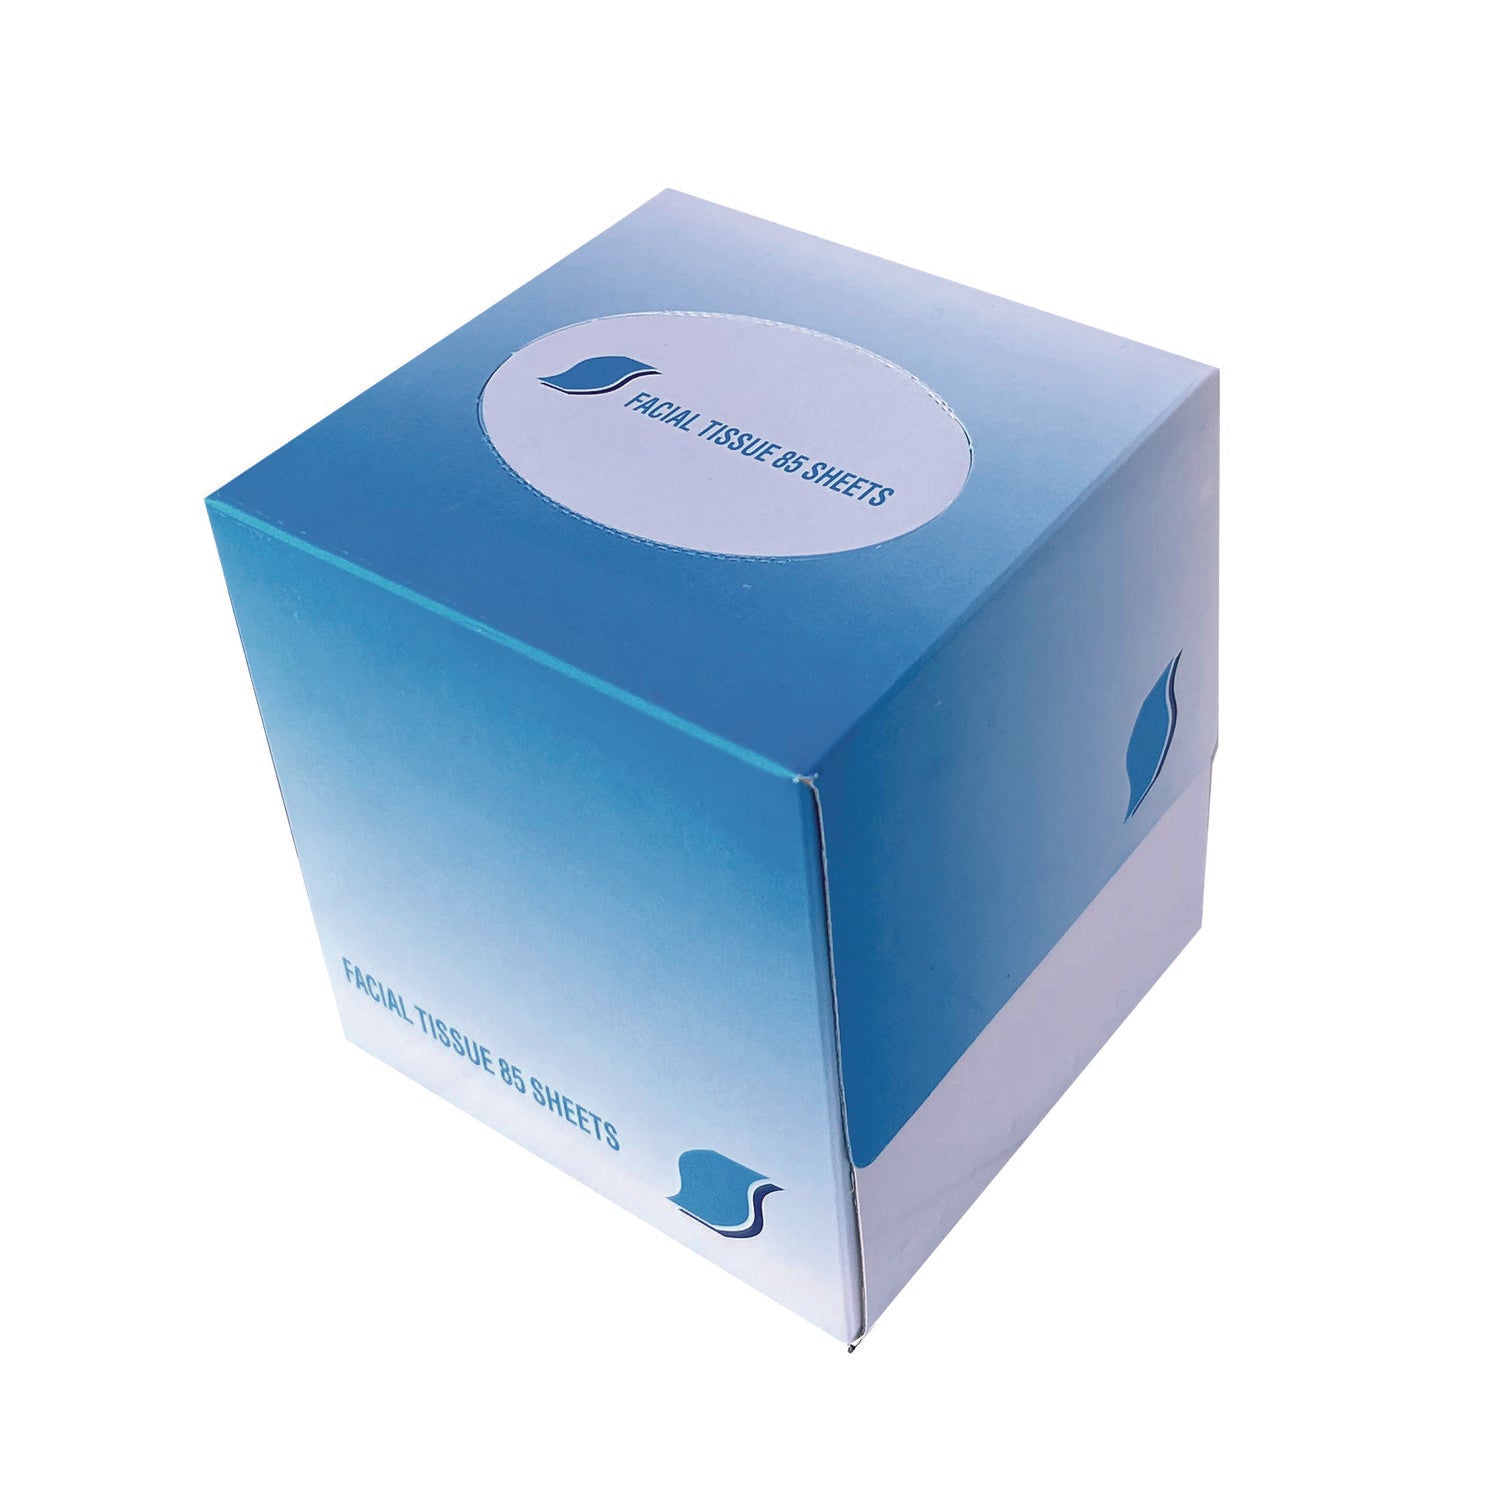 Facial Tissue Cube Box, 2-Ply, White, 85 Sheets/Box, 36 Boxes/Carton - 1